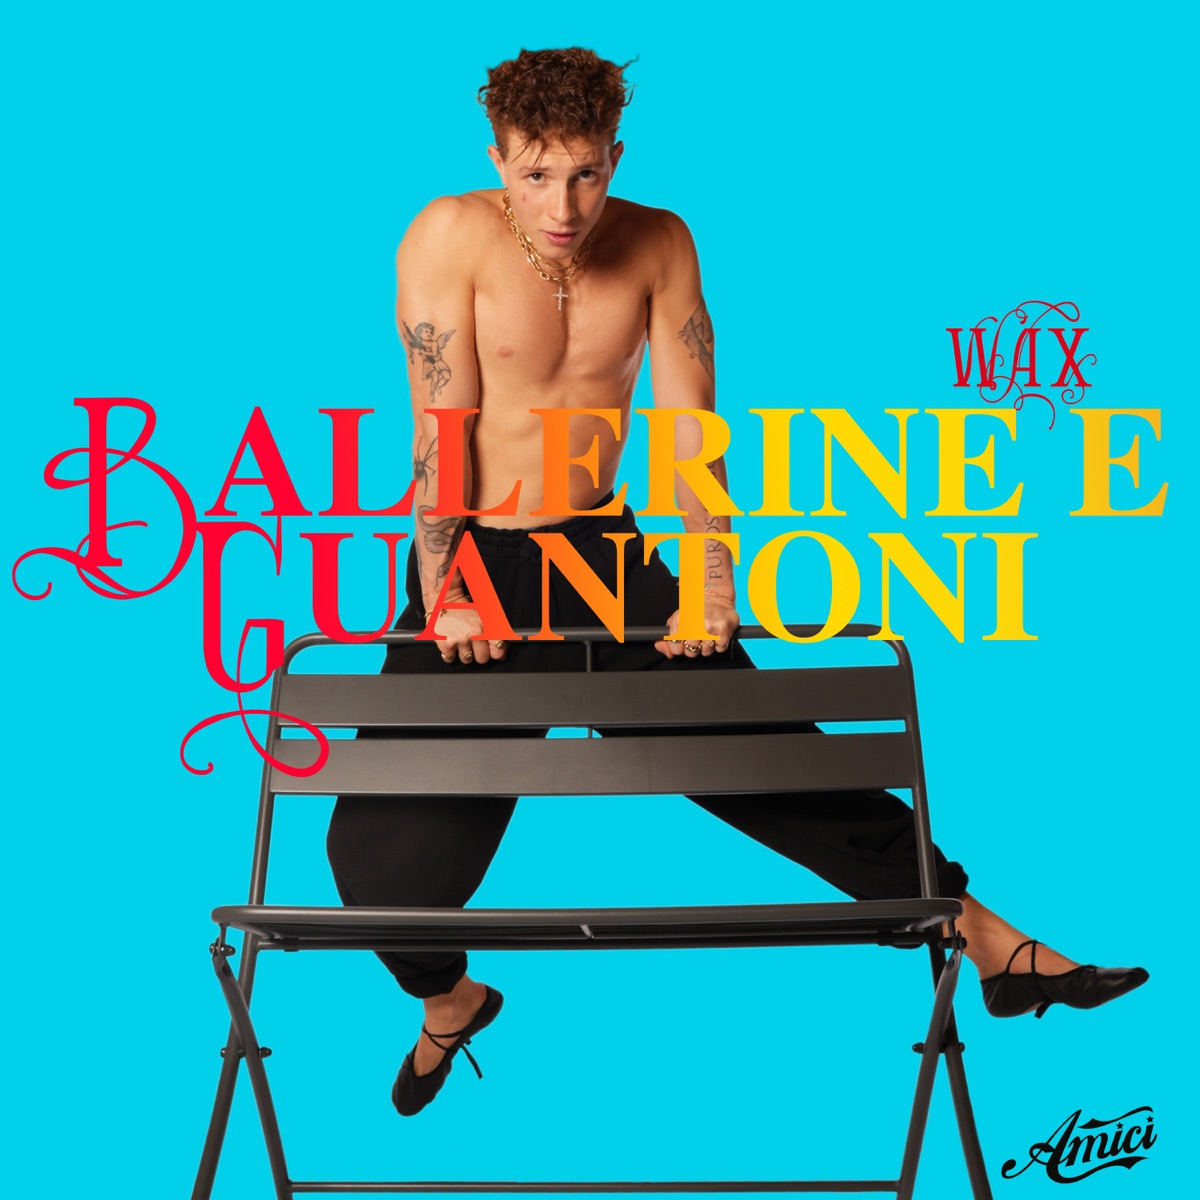 Ballerine e guantoni - Single - Album di wax - Apple Music